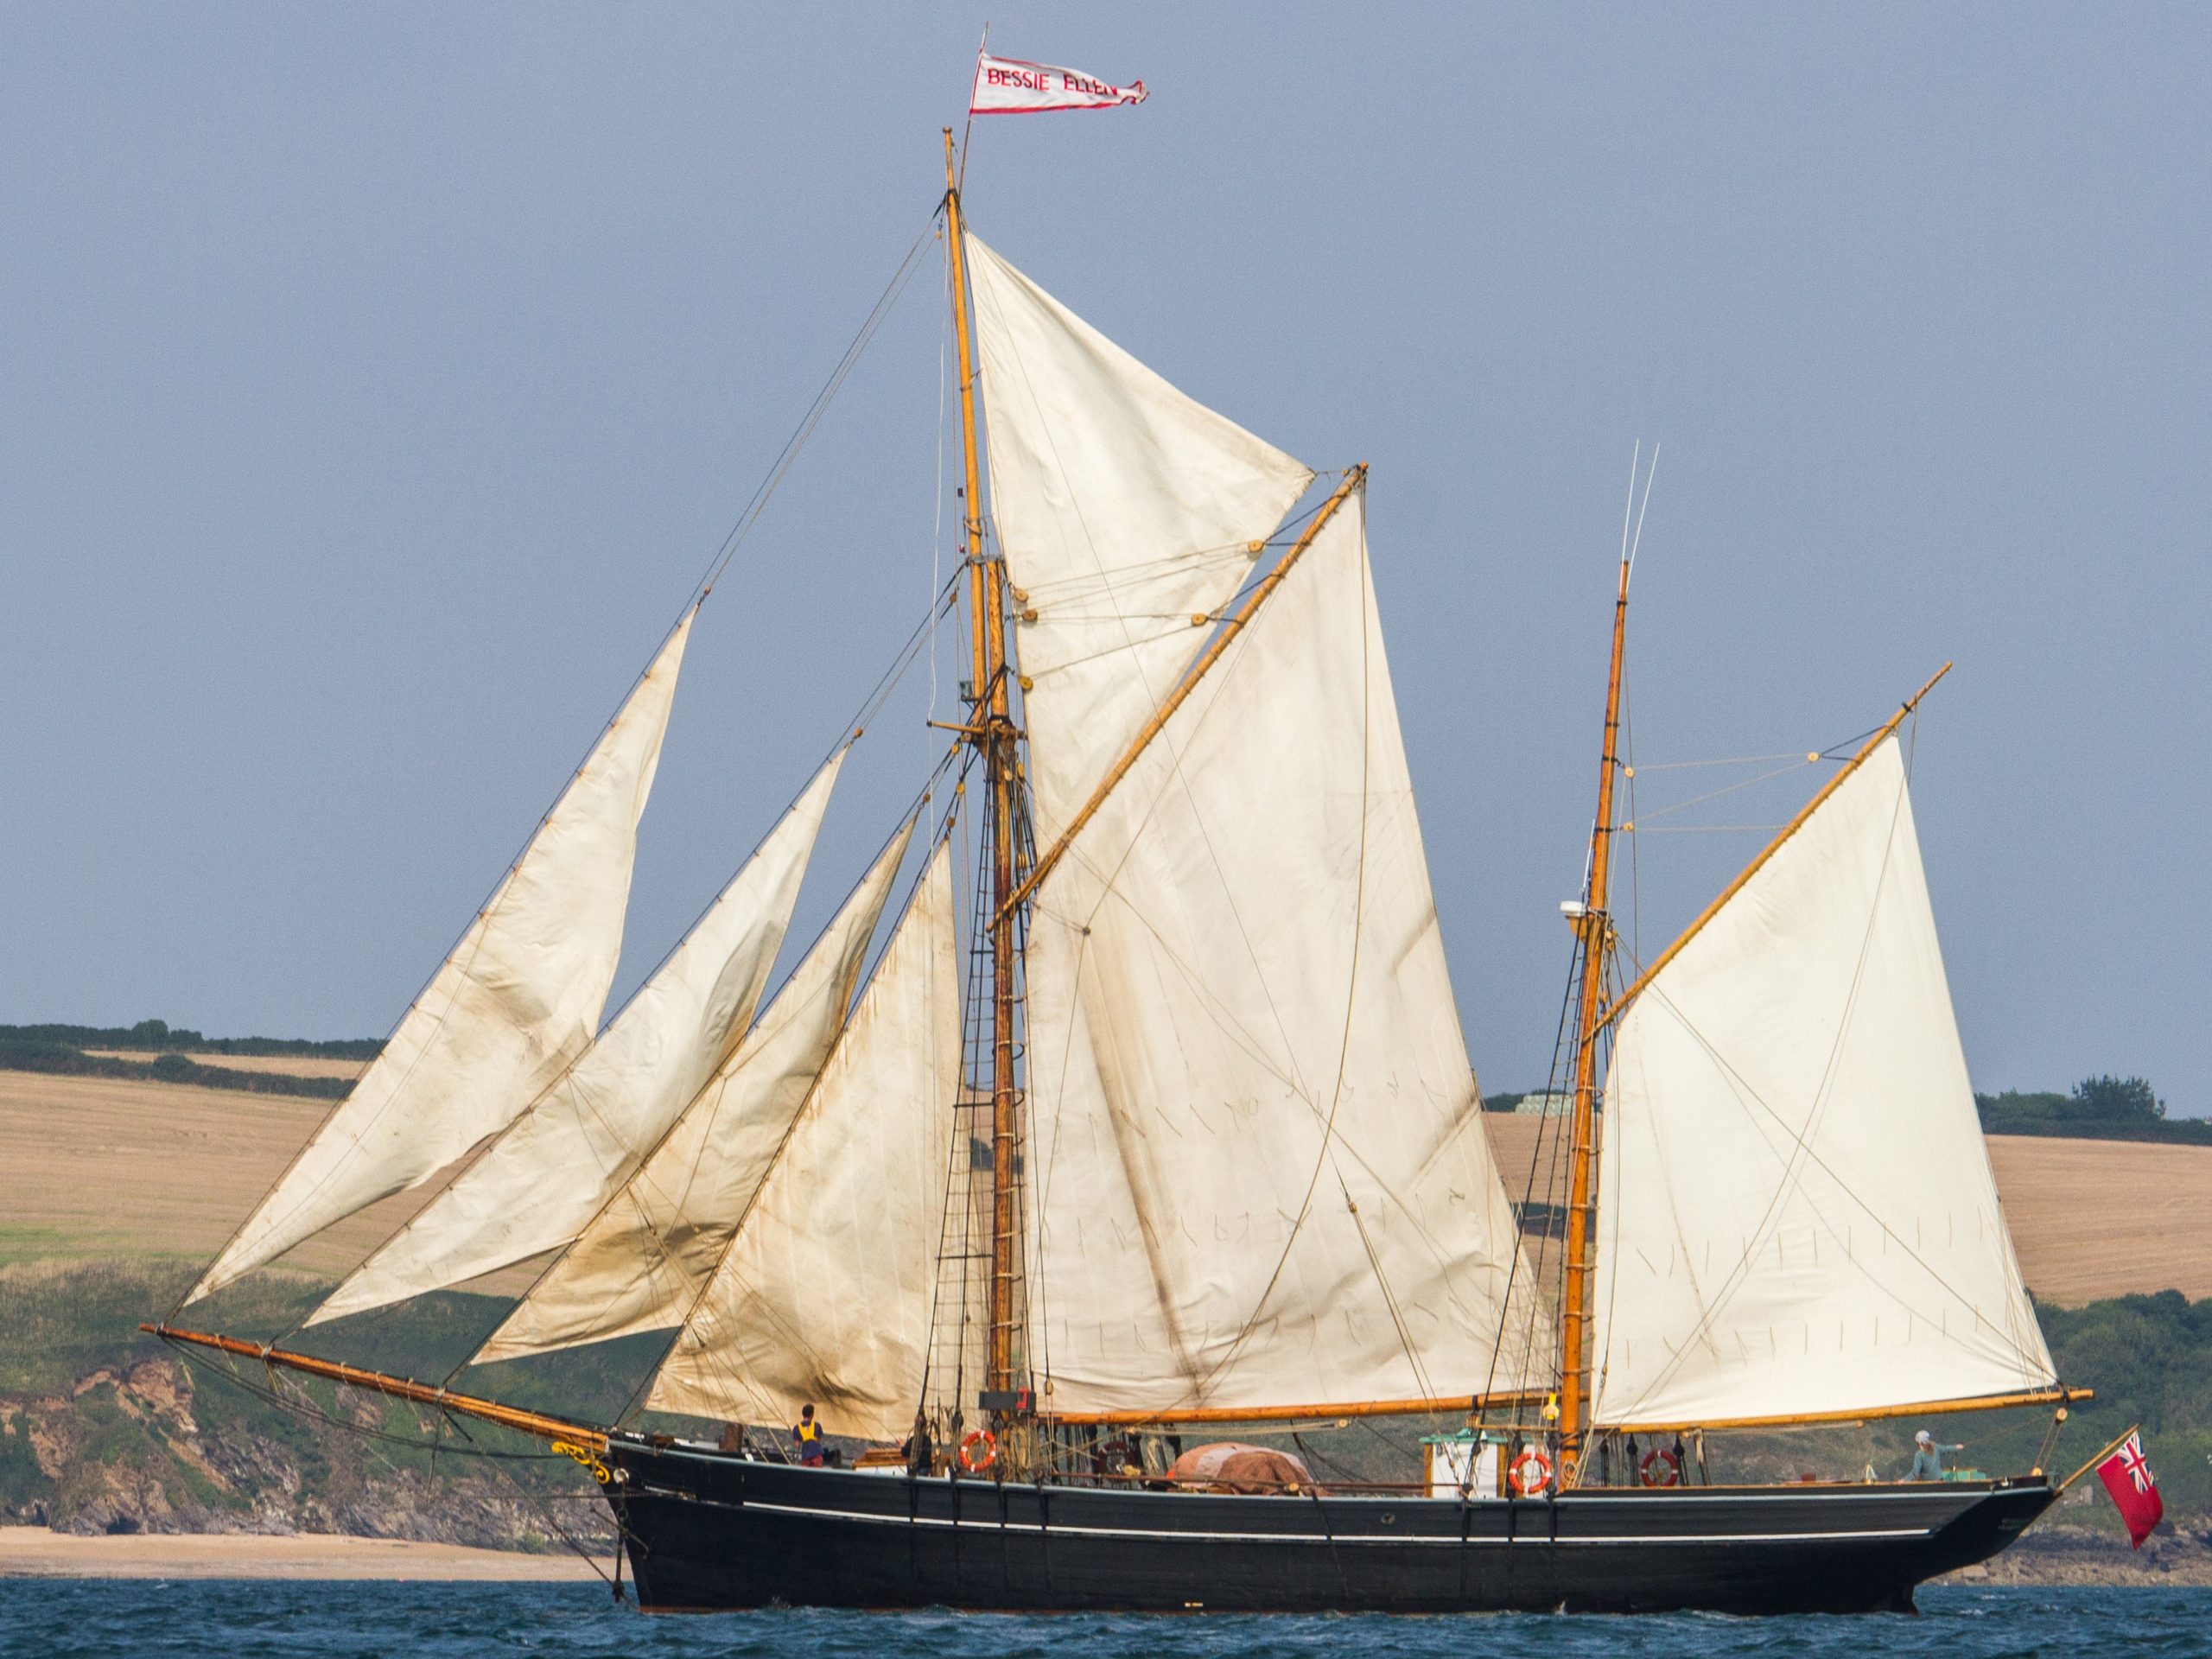 Traditional wooden charter vessel bessie ellen under sail